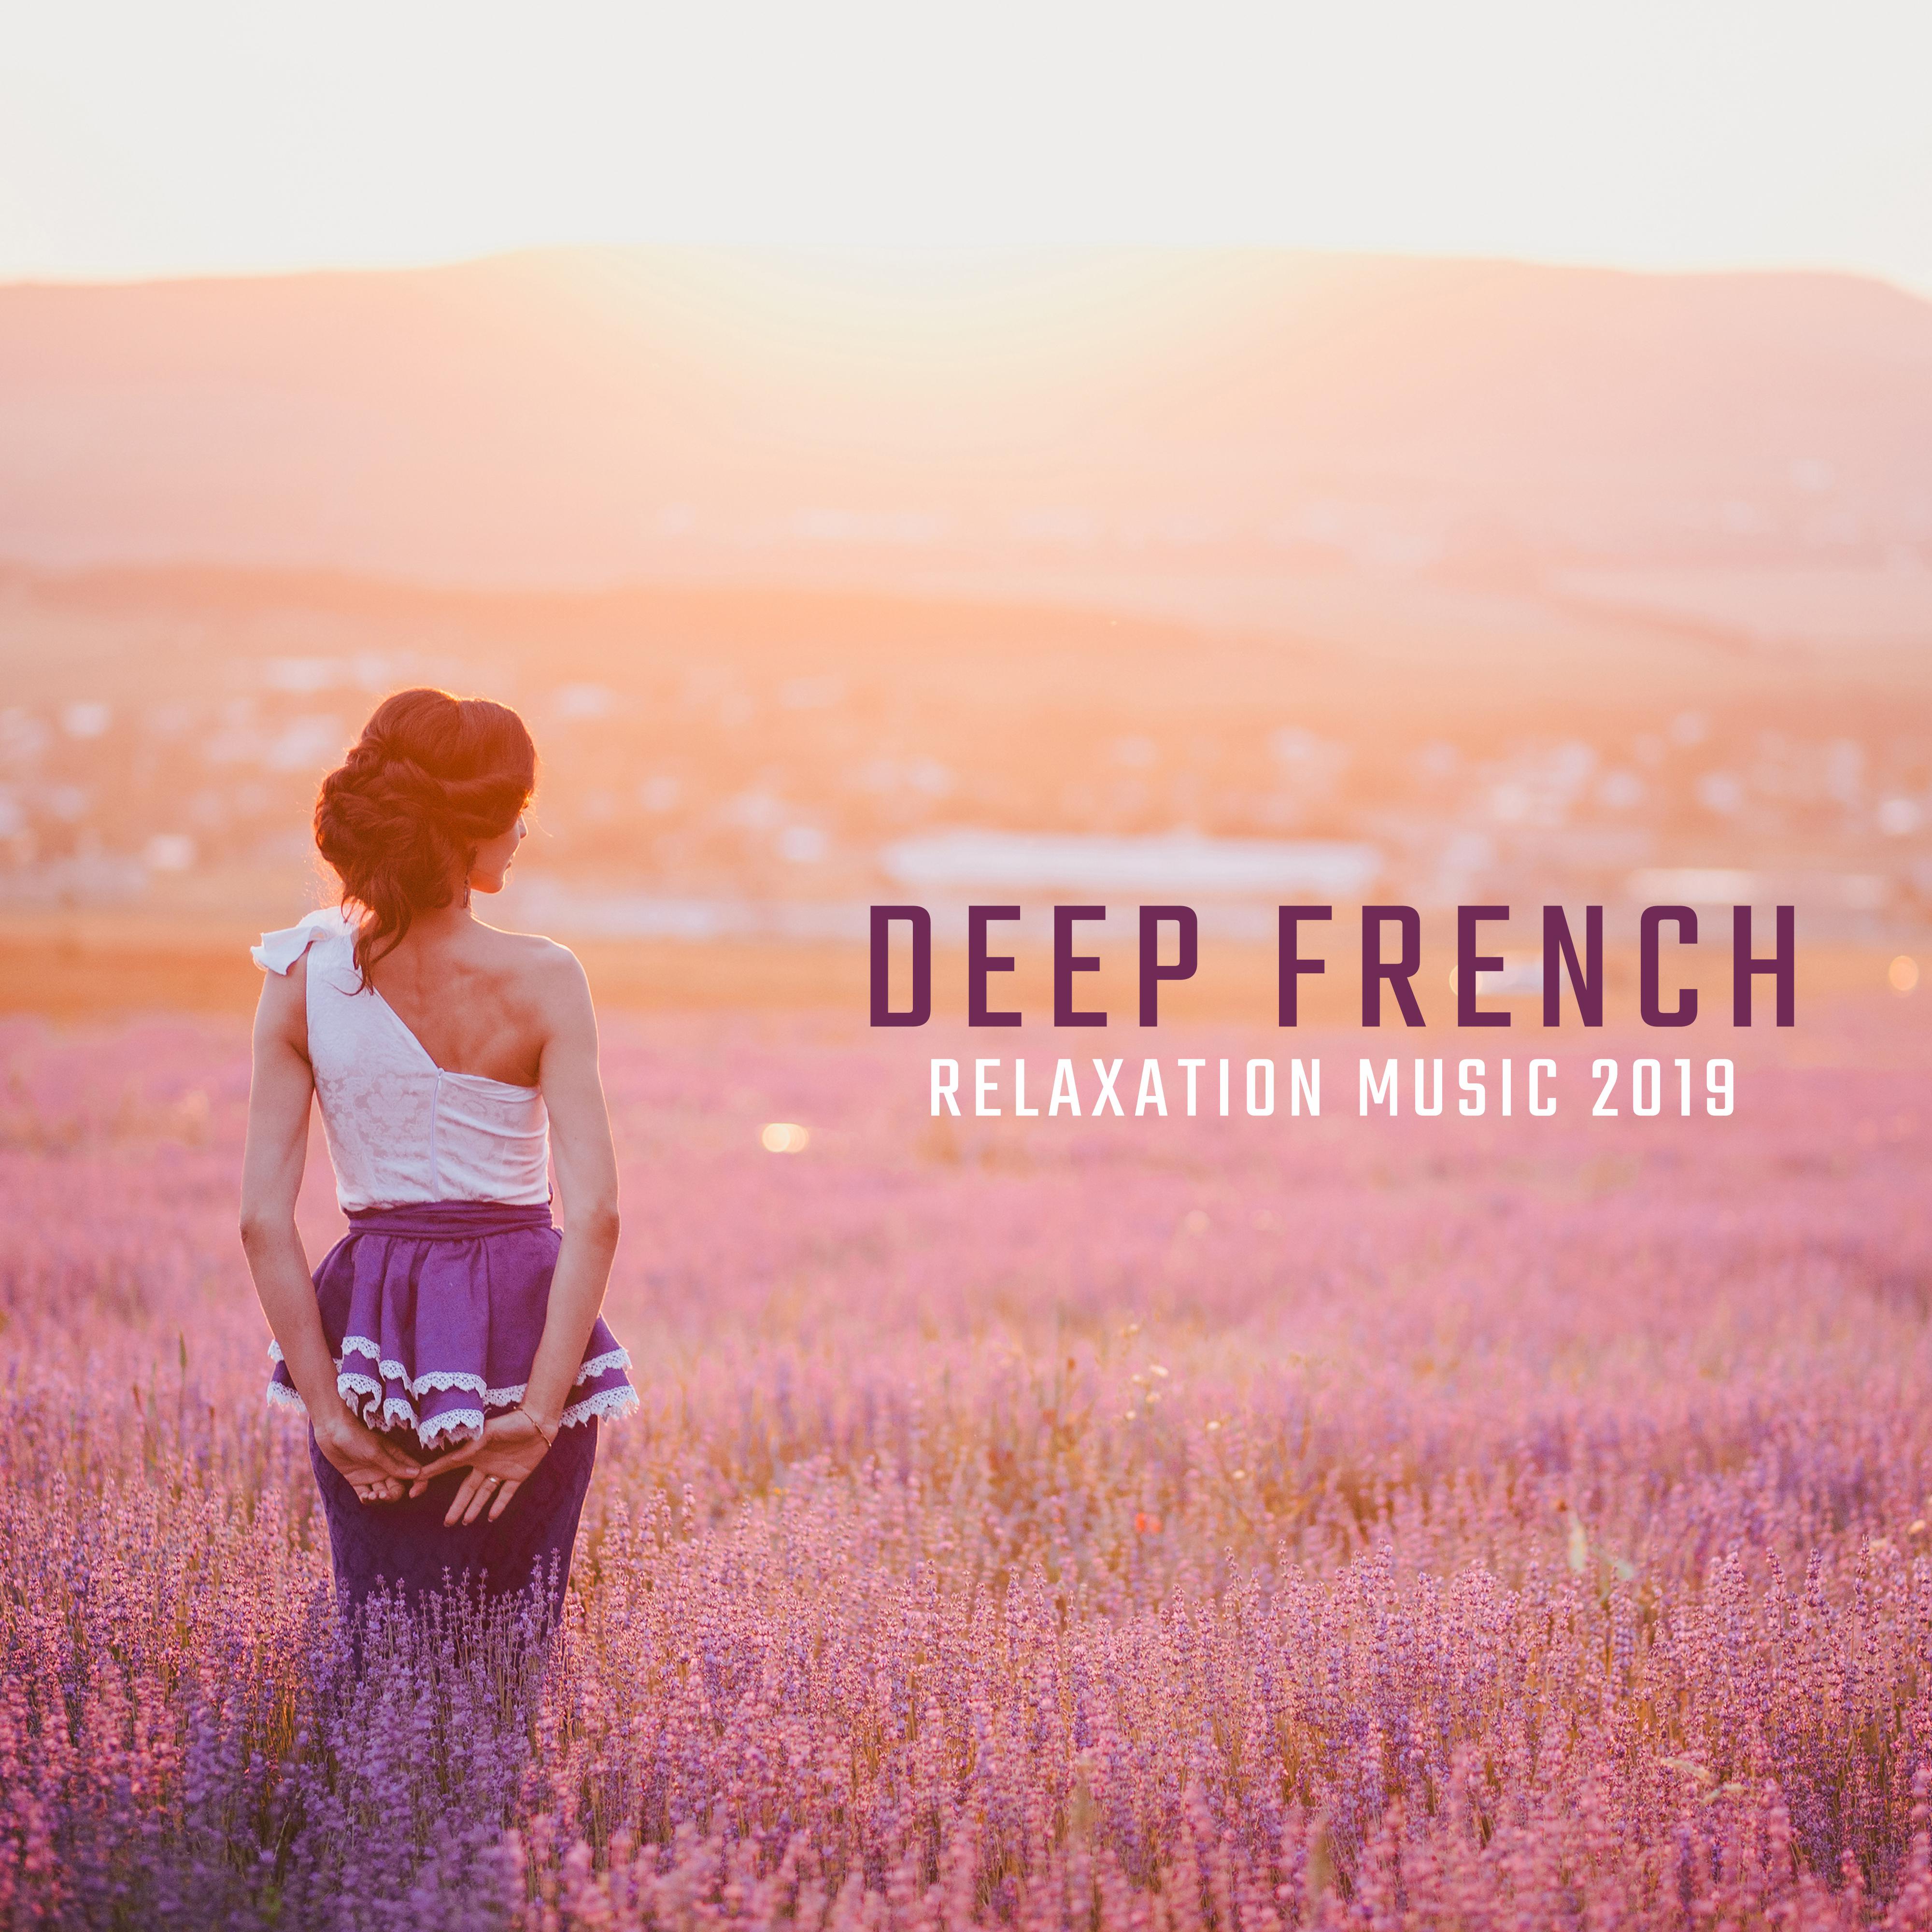 Deep French Relaxation Music 2019: Mélodies Relaxantes pour Relaxer, Musique Apaisante qui Soulage les Nerfs et les Tensions, Apaise les Émotions et apporte la Paix